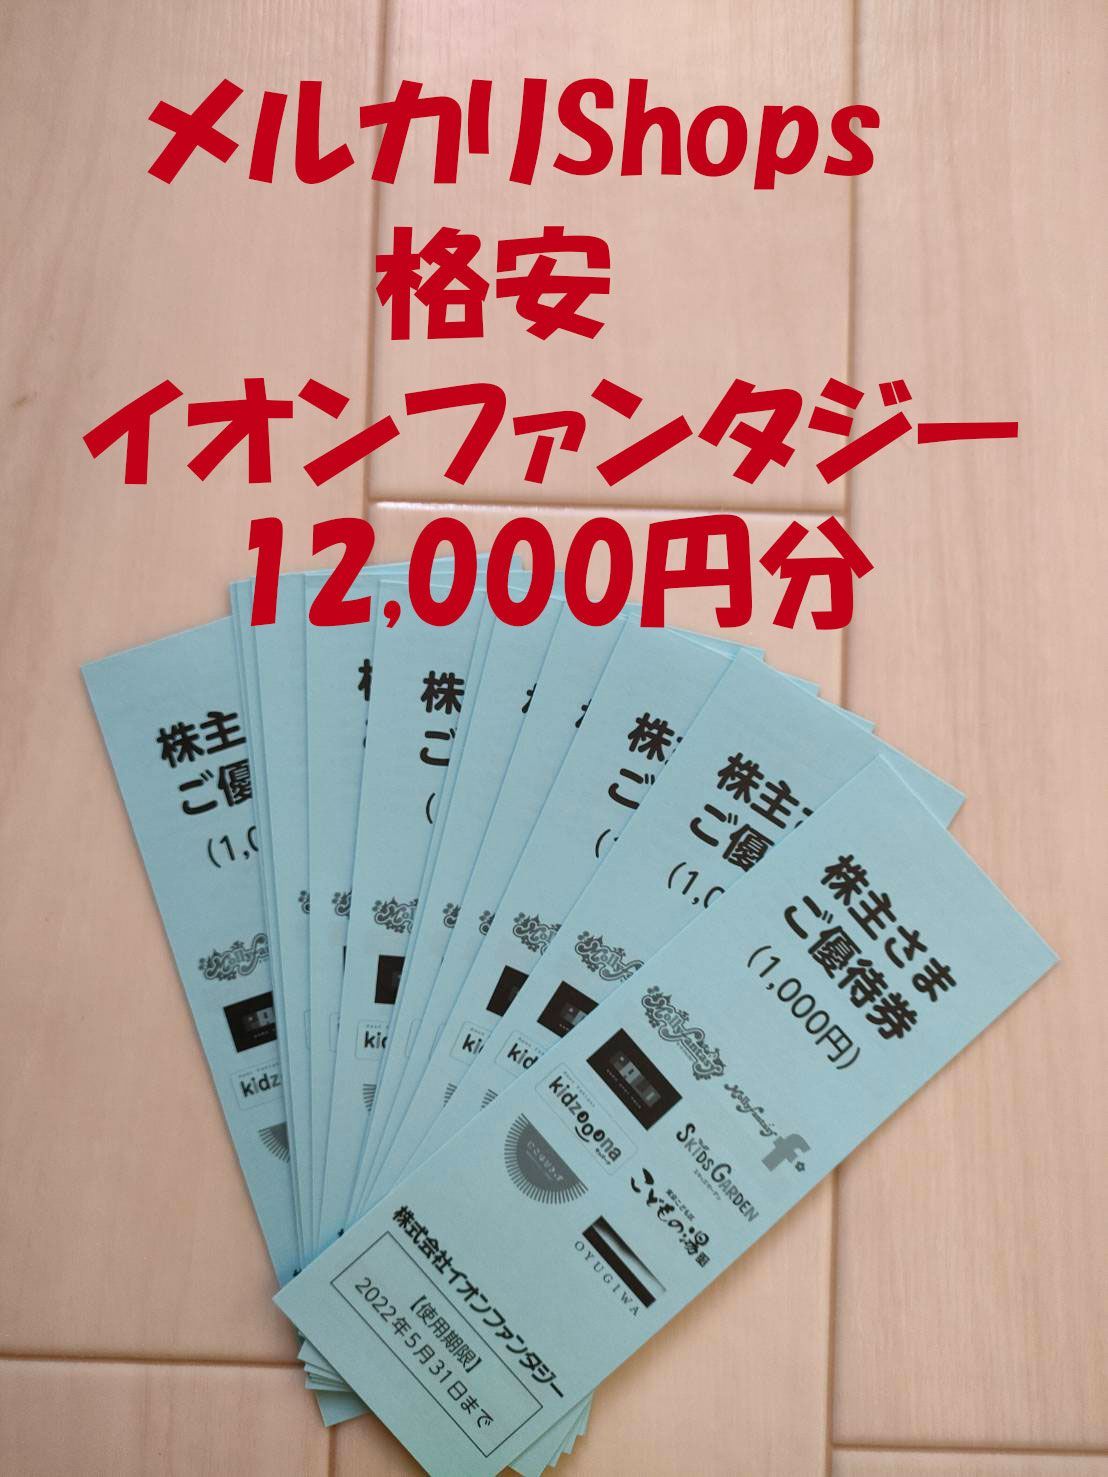 イオンファンタジー 株主優待 12000円分 送料無料 イオン AEON